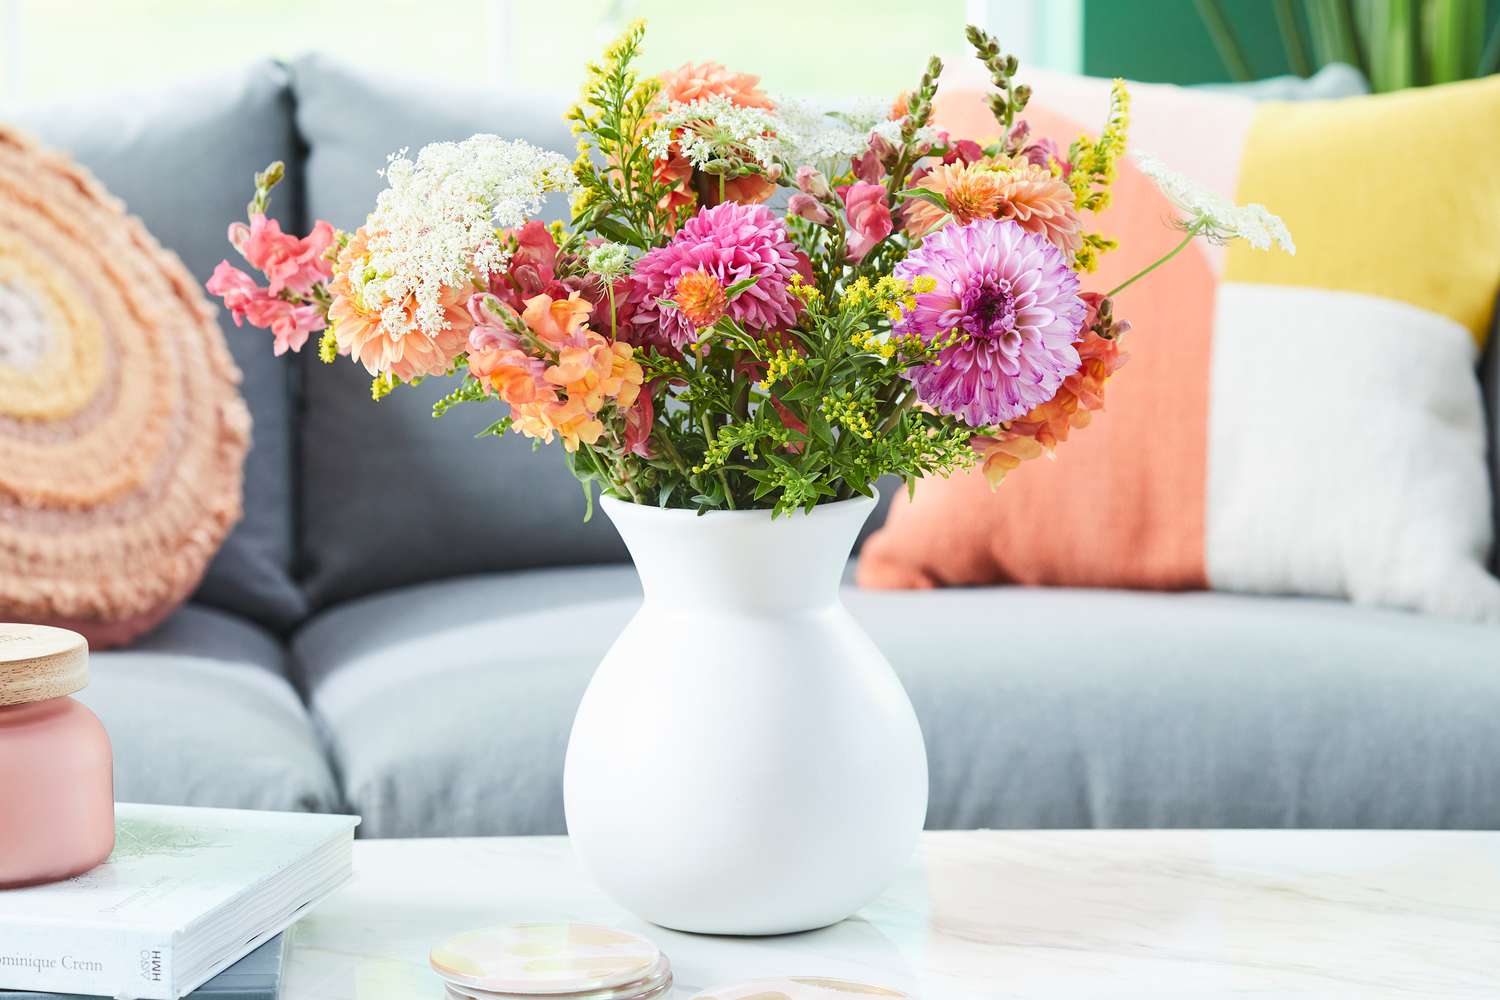 Frühlingsblumen in einer Vase auf einem Tisch in Nahaufnahme